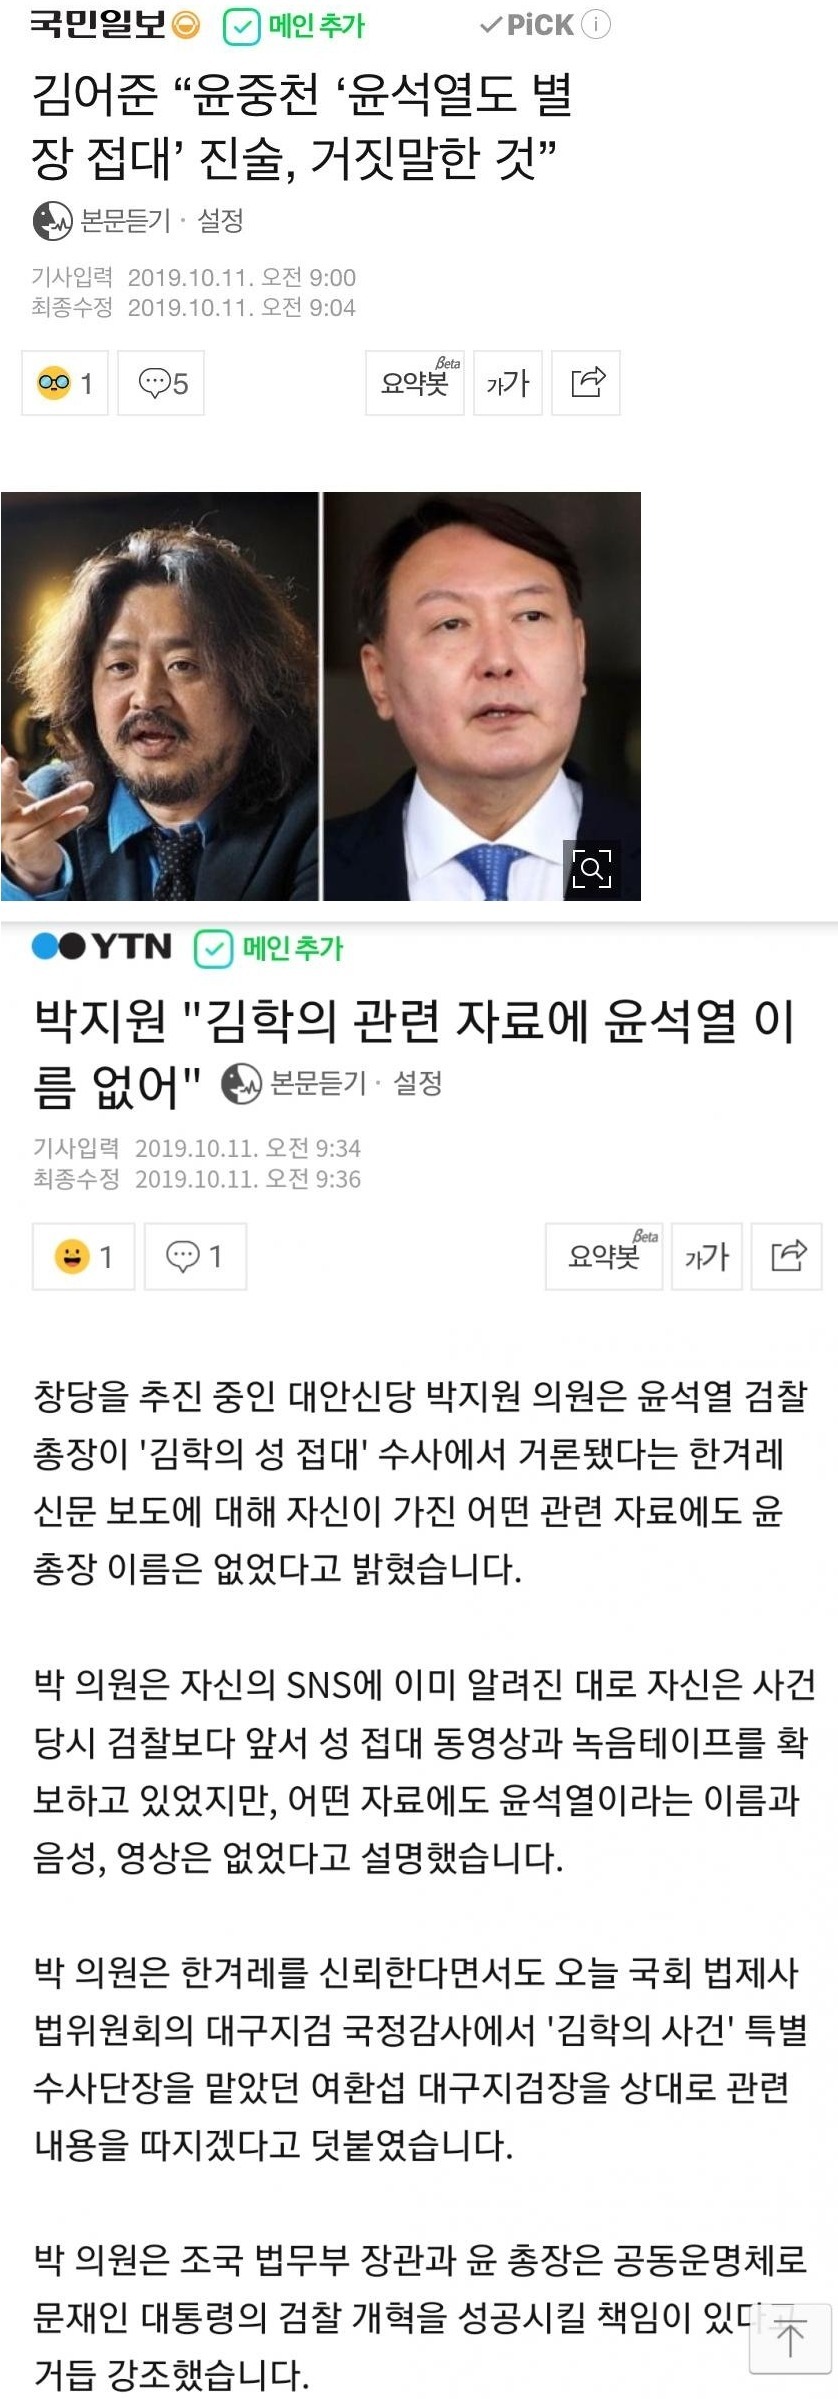 윤석열 접대 의혹 폭로한 기자